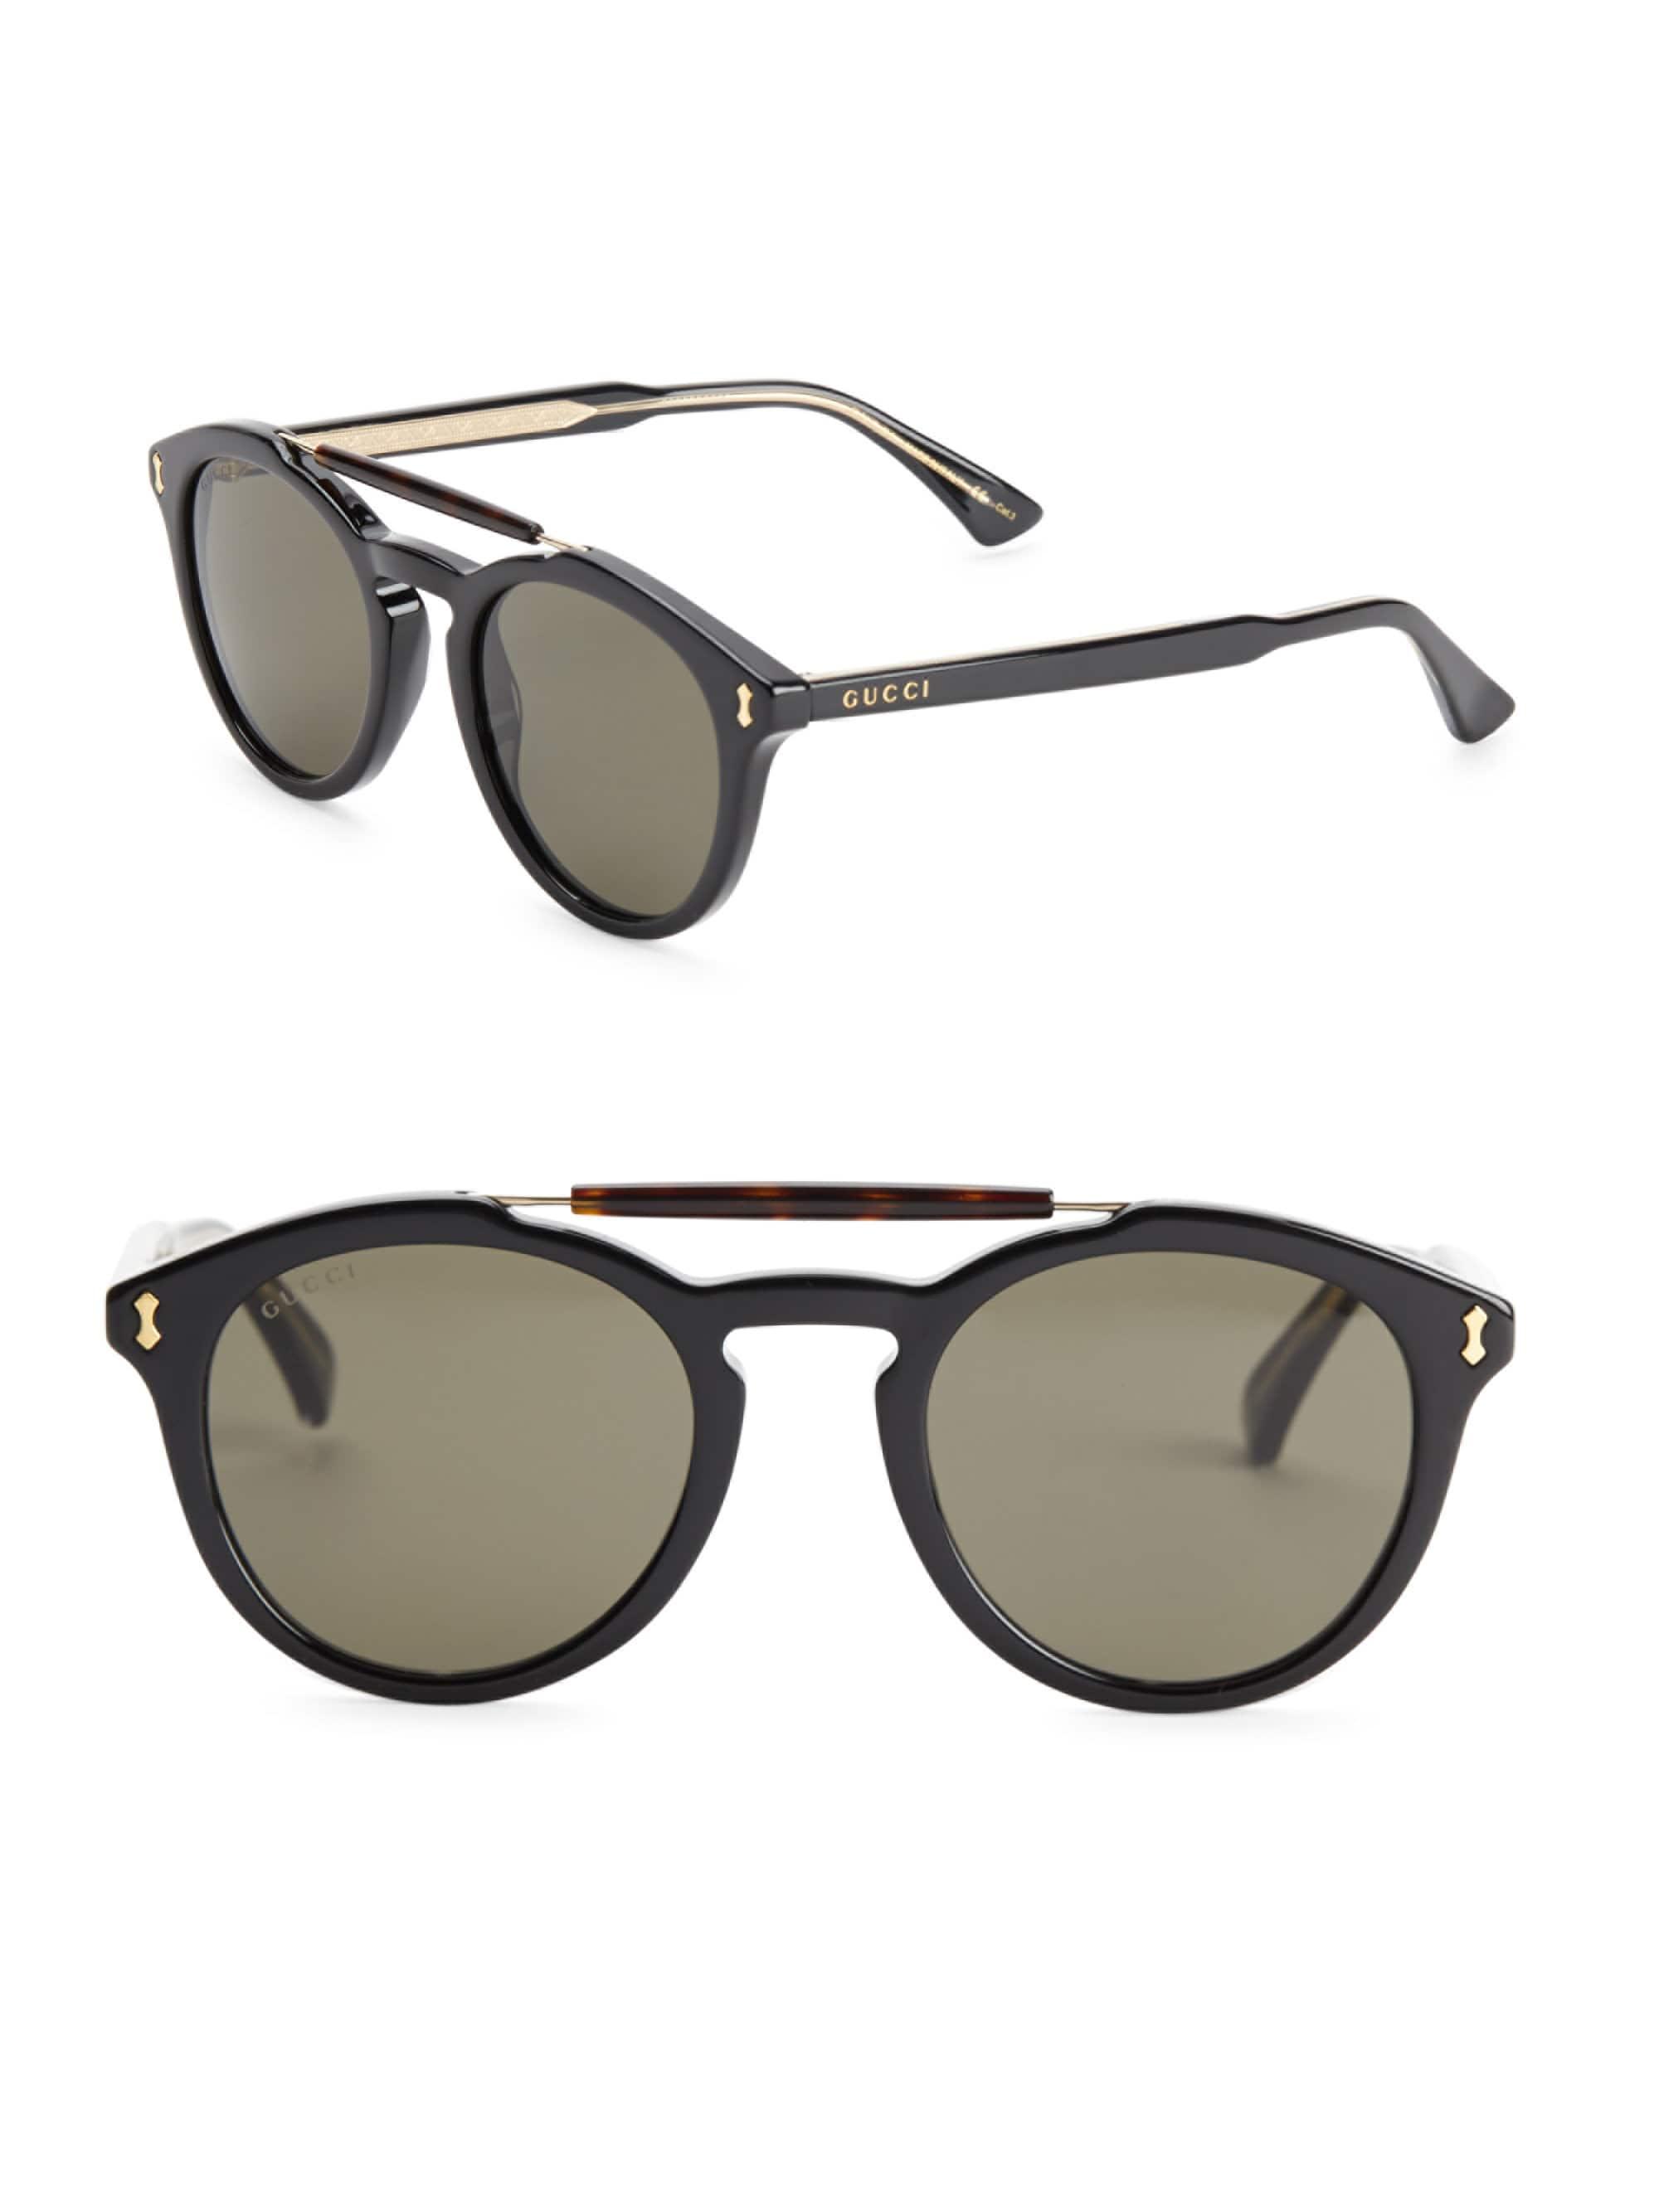 Gucci Men's 50mm Mirrored Double-bridge Round Sunglasses - Black for